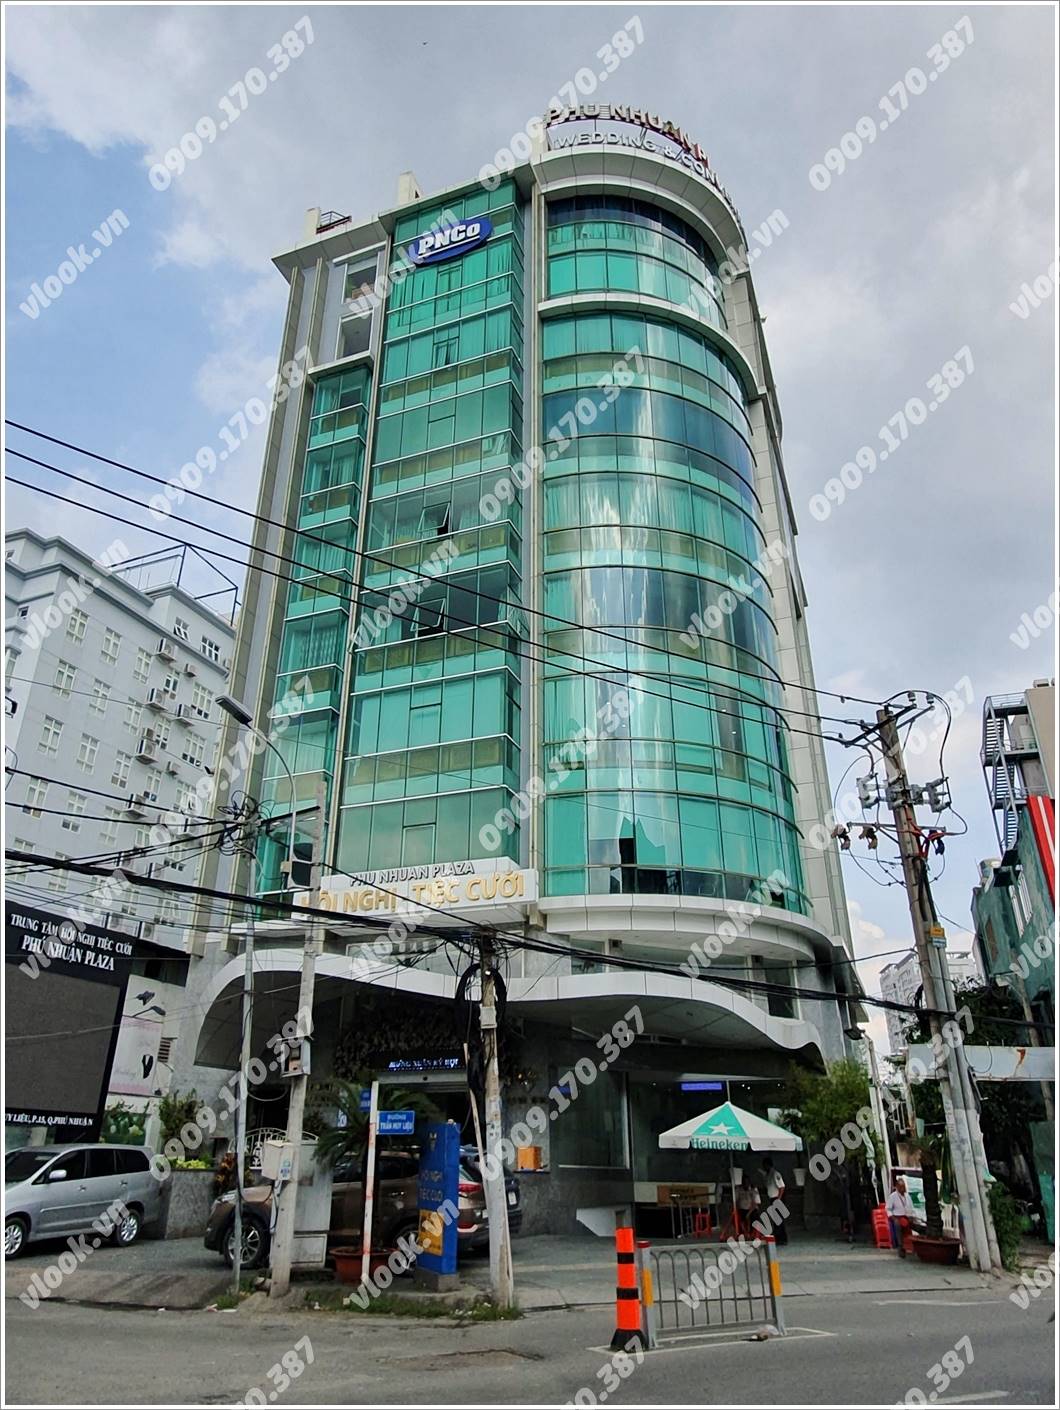 Cao ốc cho thuê văn phòng Phú Nhuận Plaza, Trần Huy Liện, Quận Phú Nhuận, TPHCM - vlook.vn